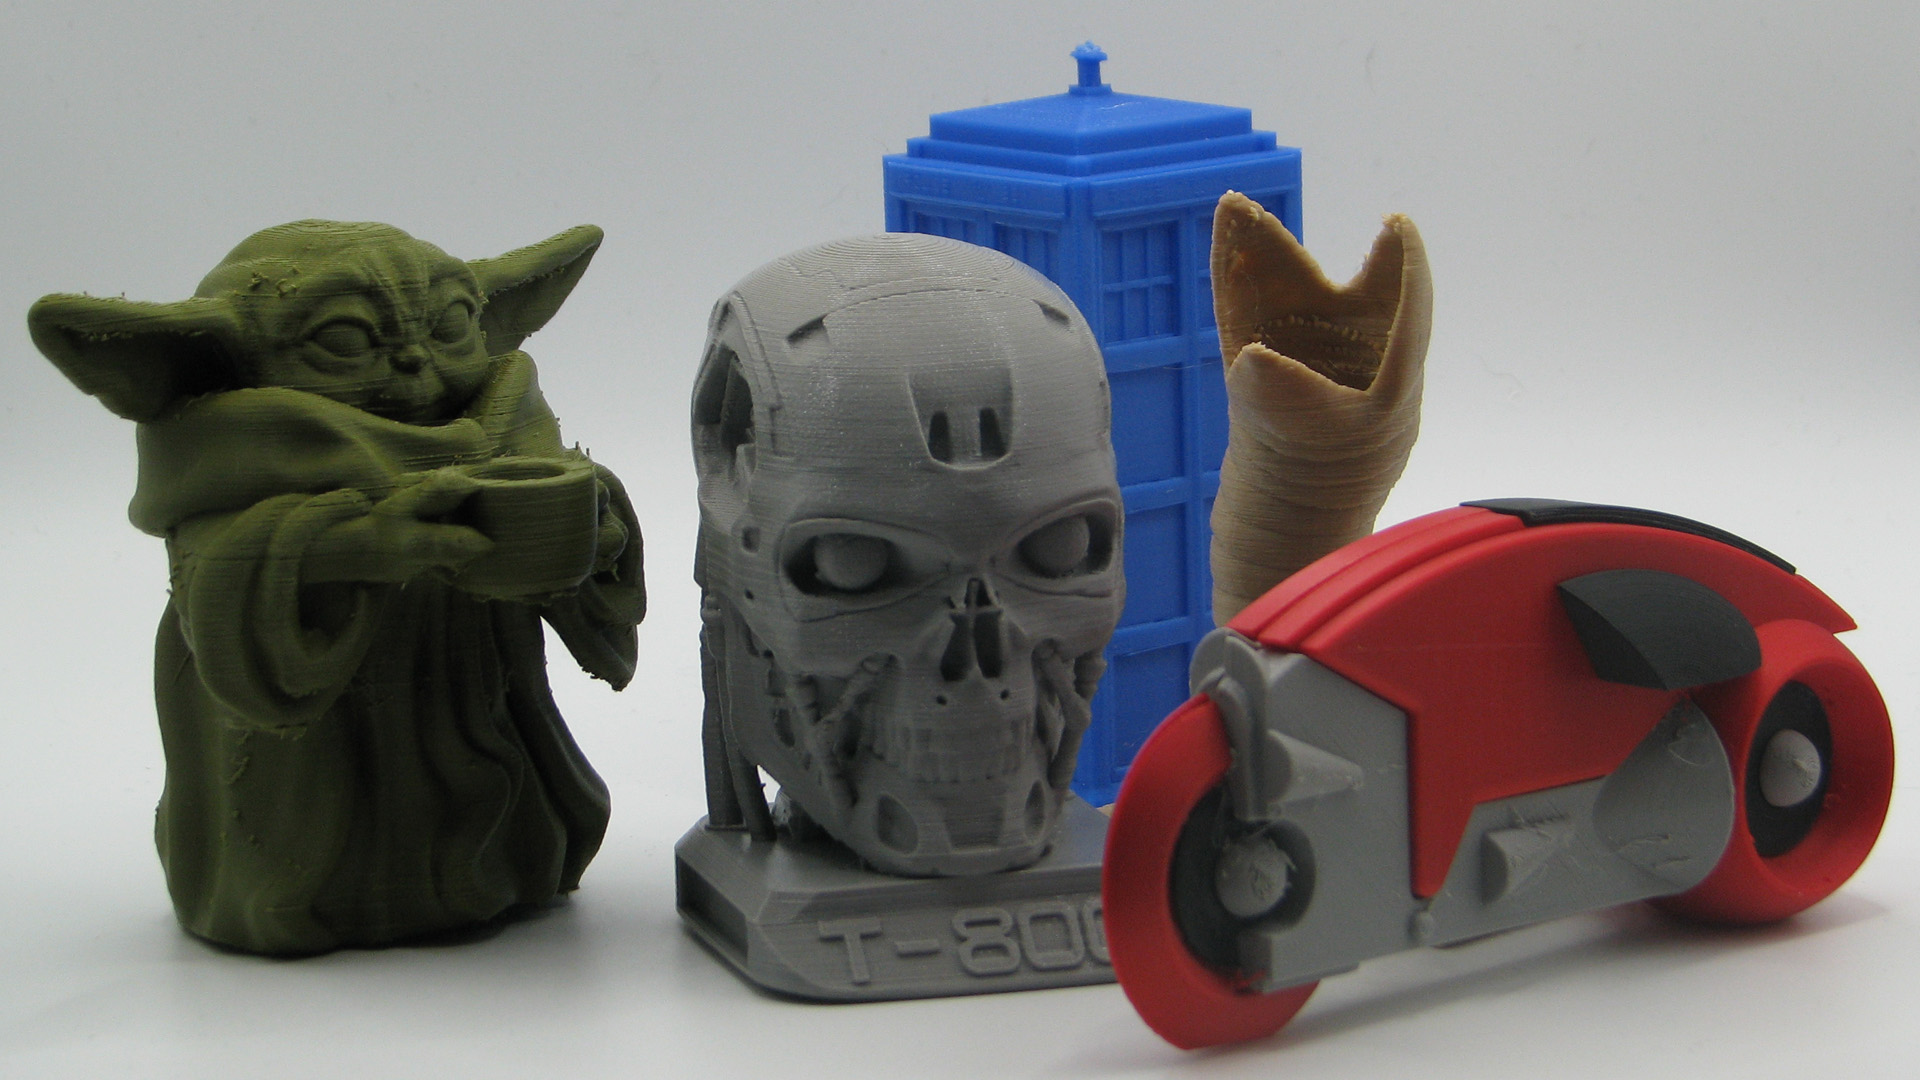 Hilse Lav et navn femte Best free 3D prints for sci-fi fans: Star Wars, Dune & more | Space